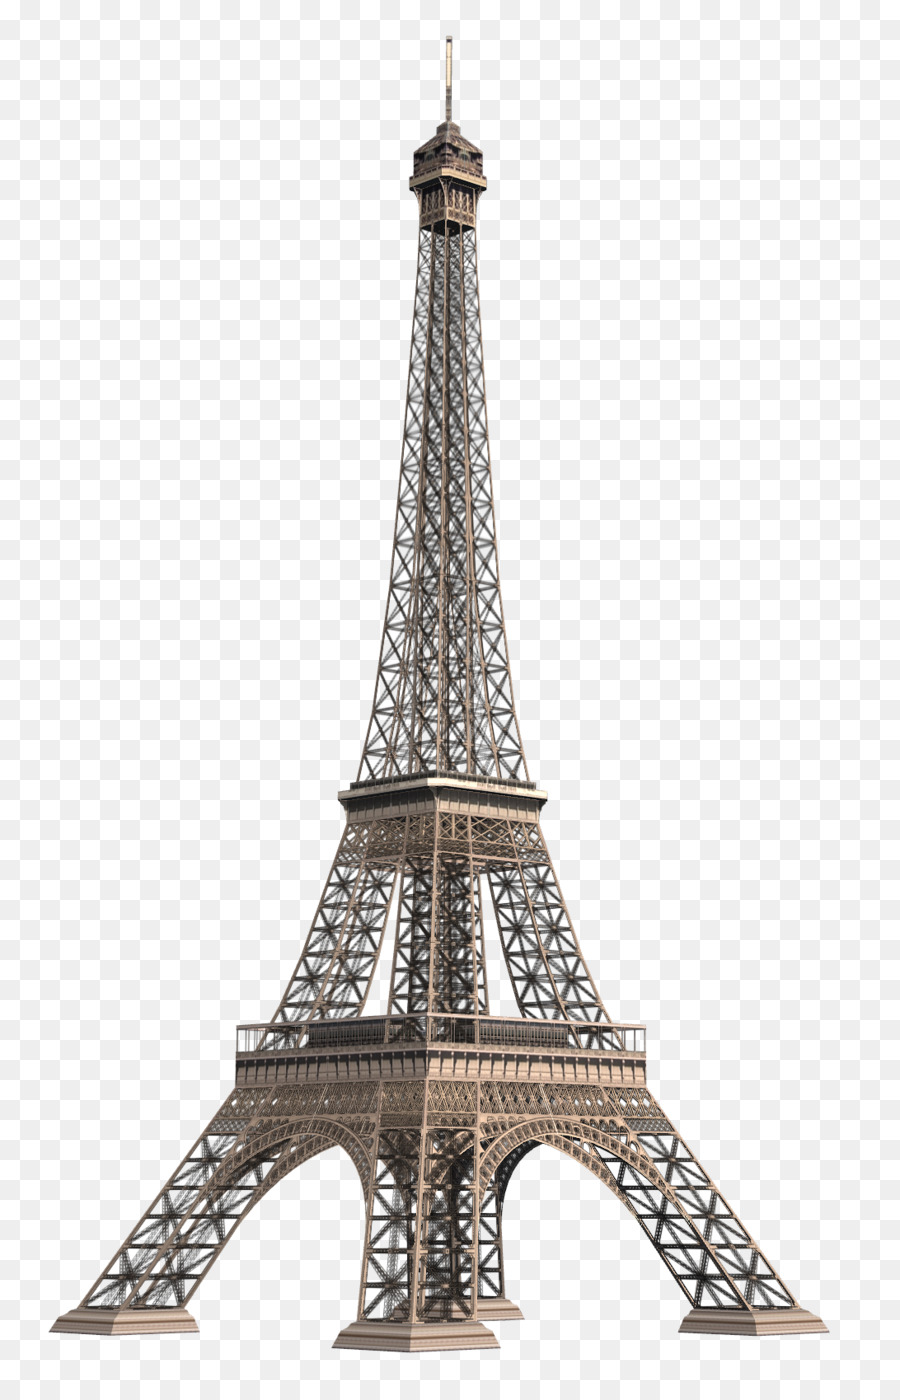 Eiffel Tower Clip art - Paris png download - 1092*1688 - Free Transparent Eiffel Tower png Download.